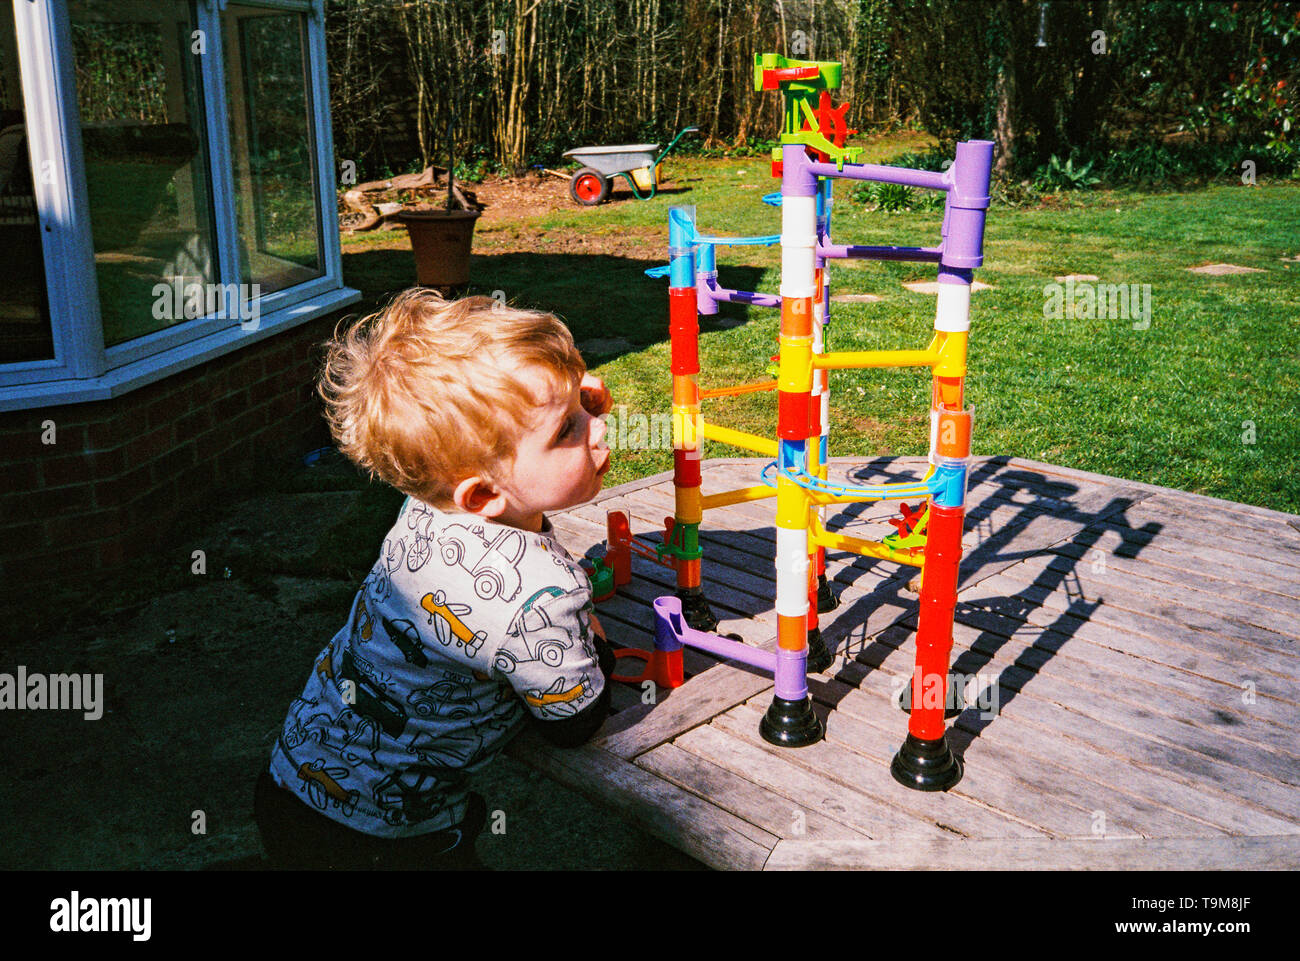 Zwei Jahre alte Junge spielt mit einem Spielzeug Kugelbahn. Medstead, Hampshire, England, Vereinigen Königreich. Stockfoto